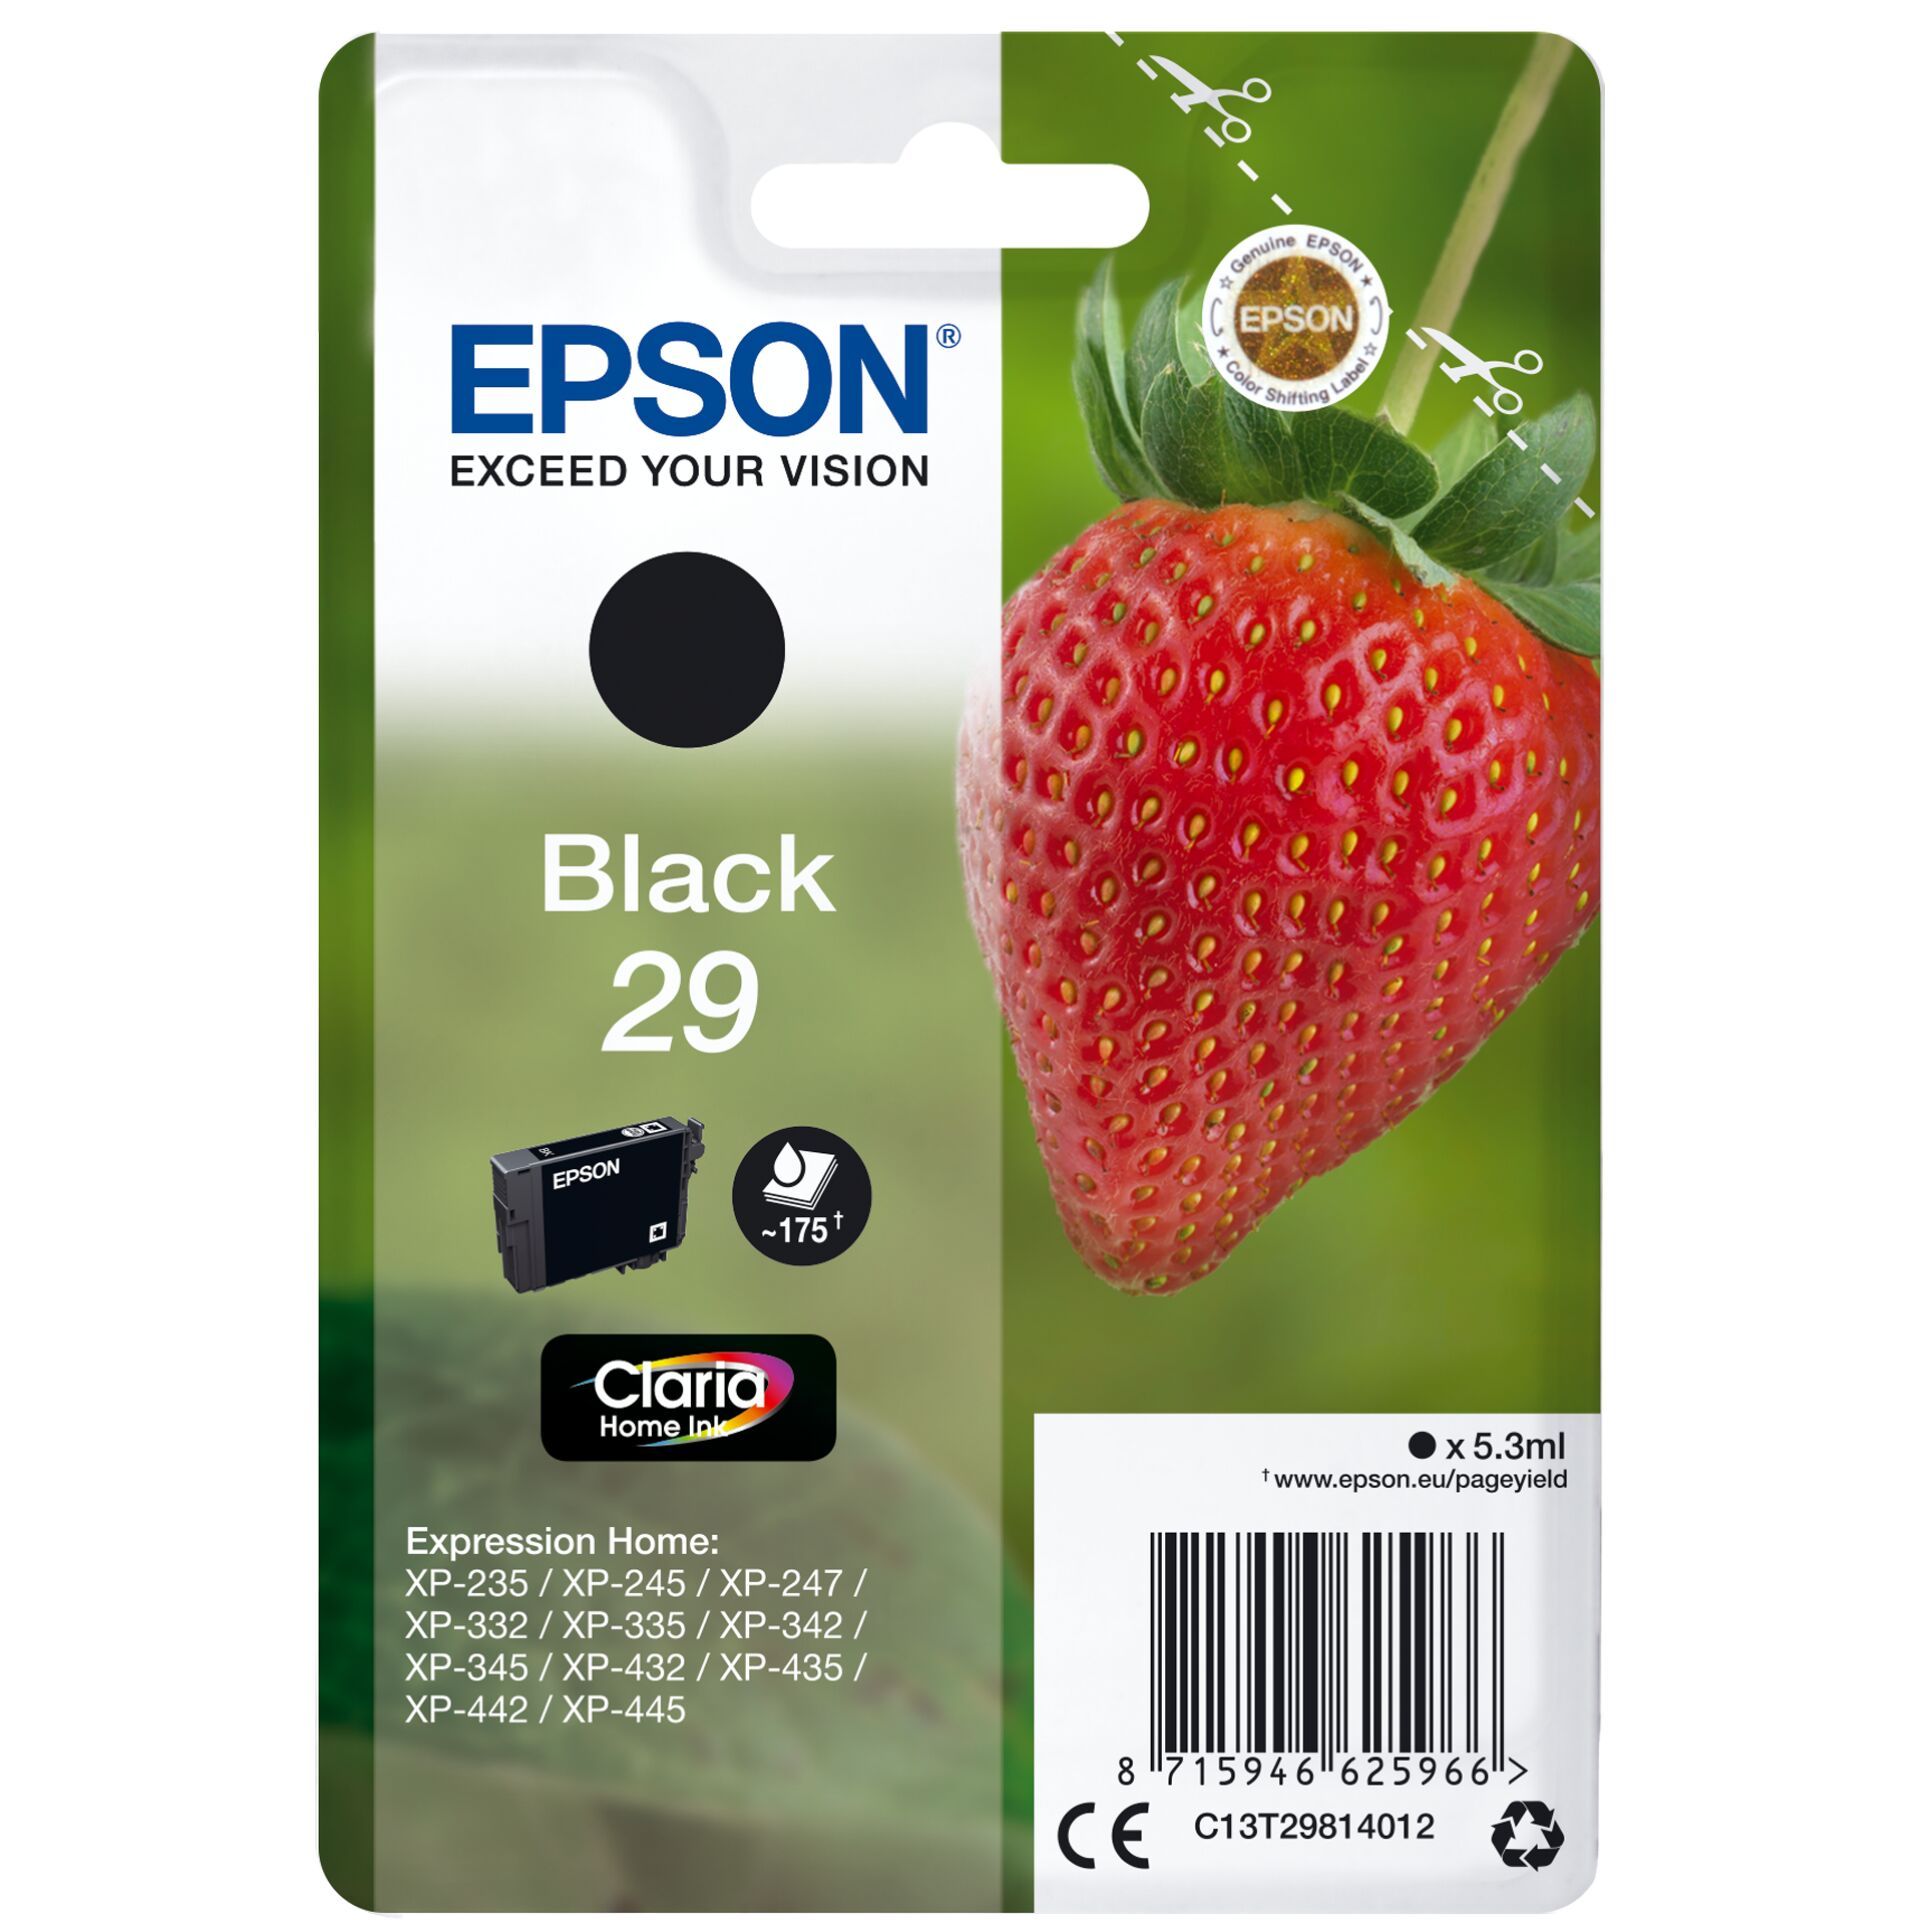 Epson Tinte 29 schwarz, 5.3ml 